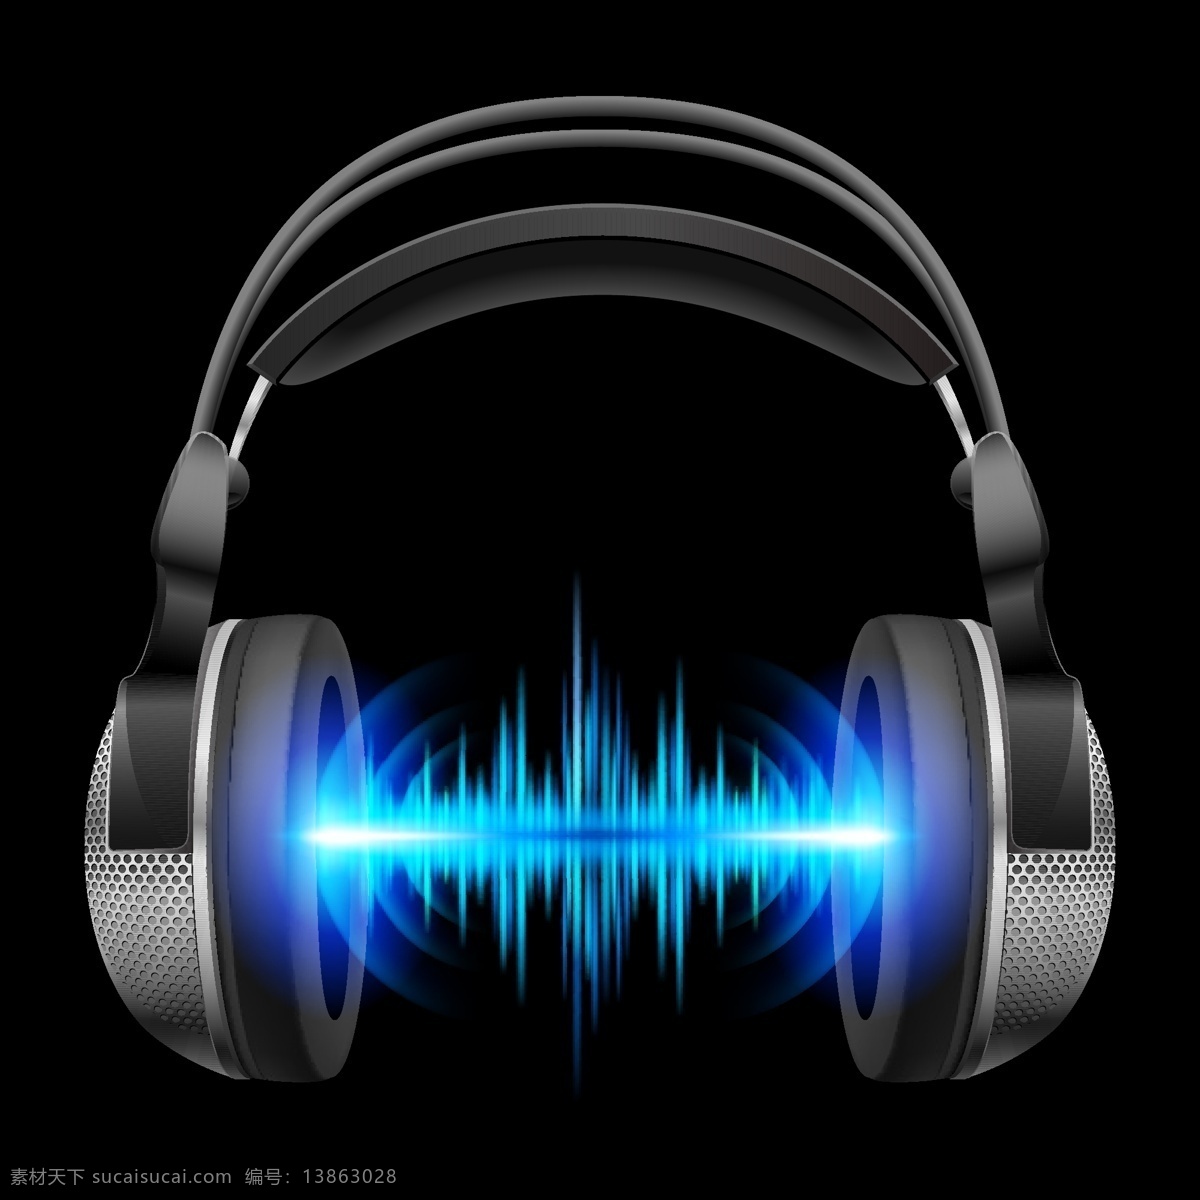 耳机 音乐 光线 光谱 矢量 背景 矢量素材 设计素材 背景素材